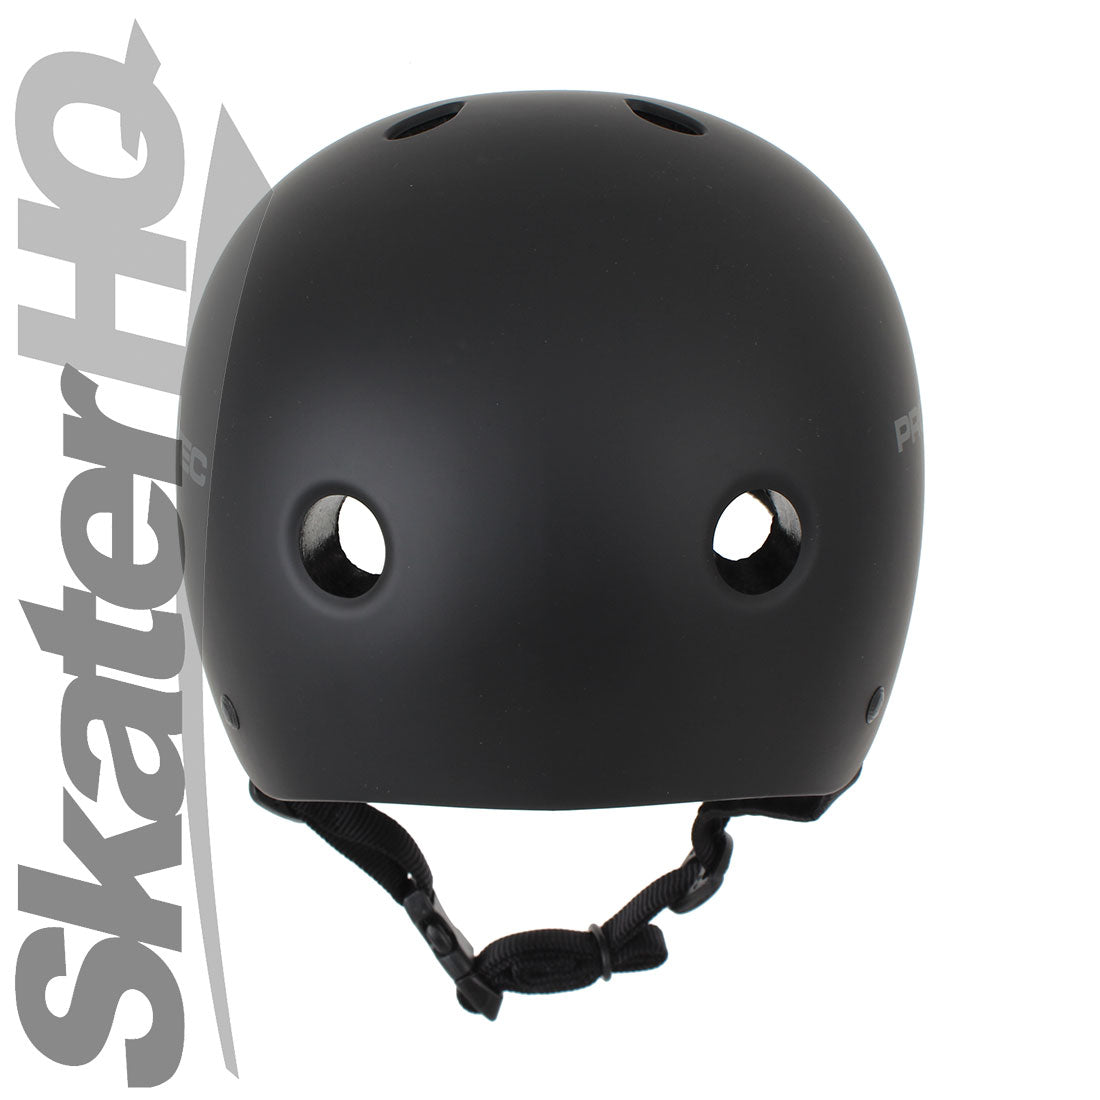 Pro-Tec Classic Cert Matte Black - Medium Helmets